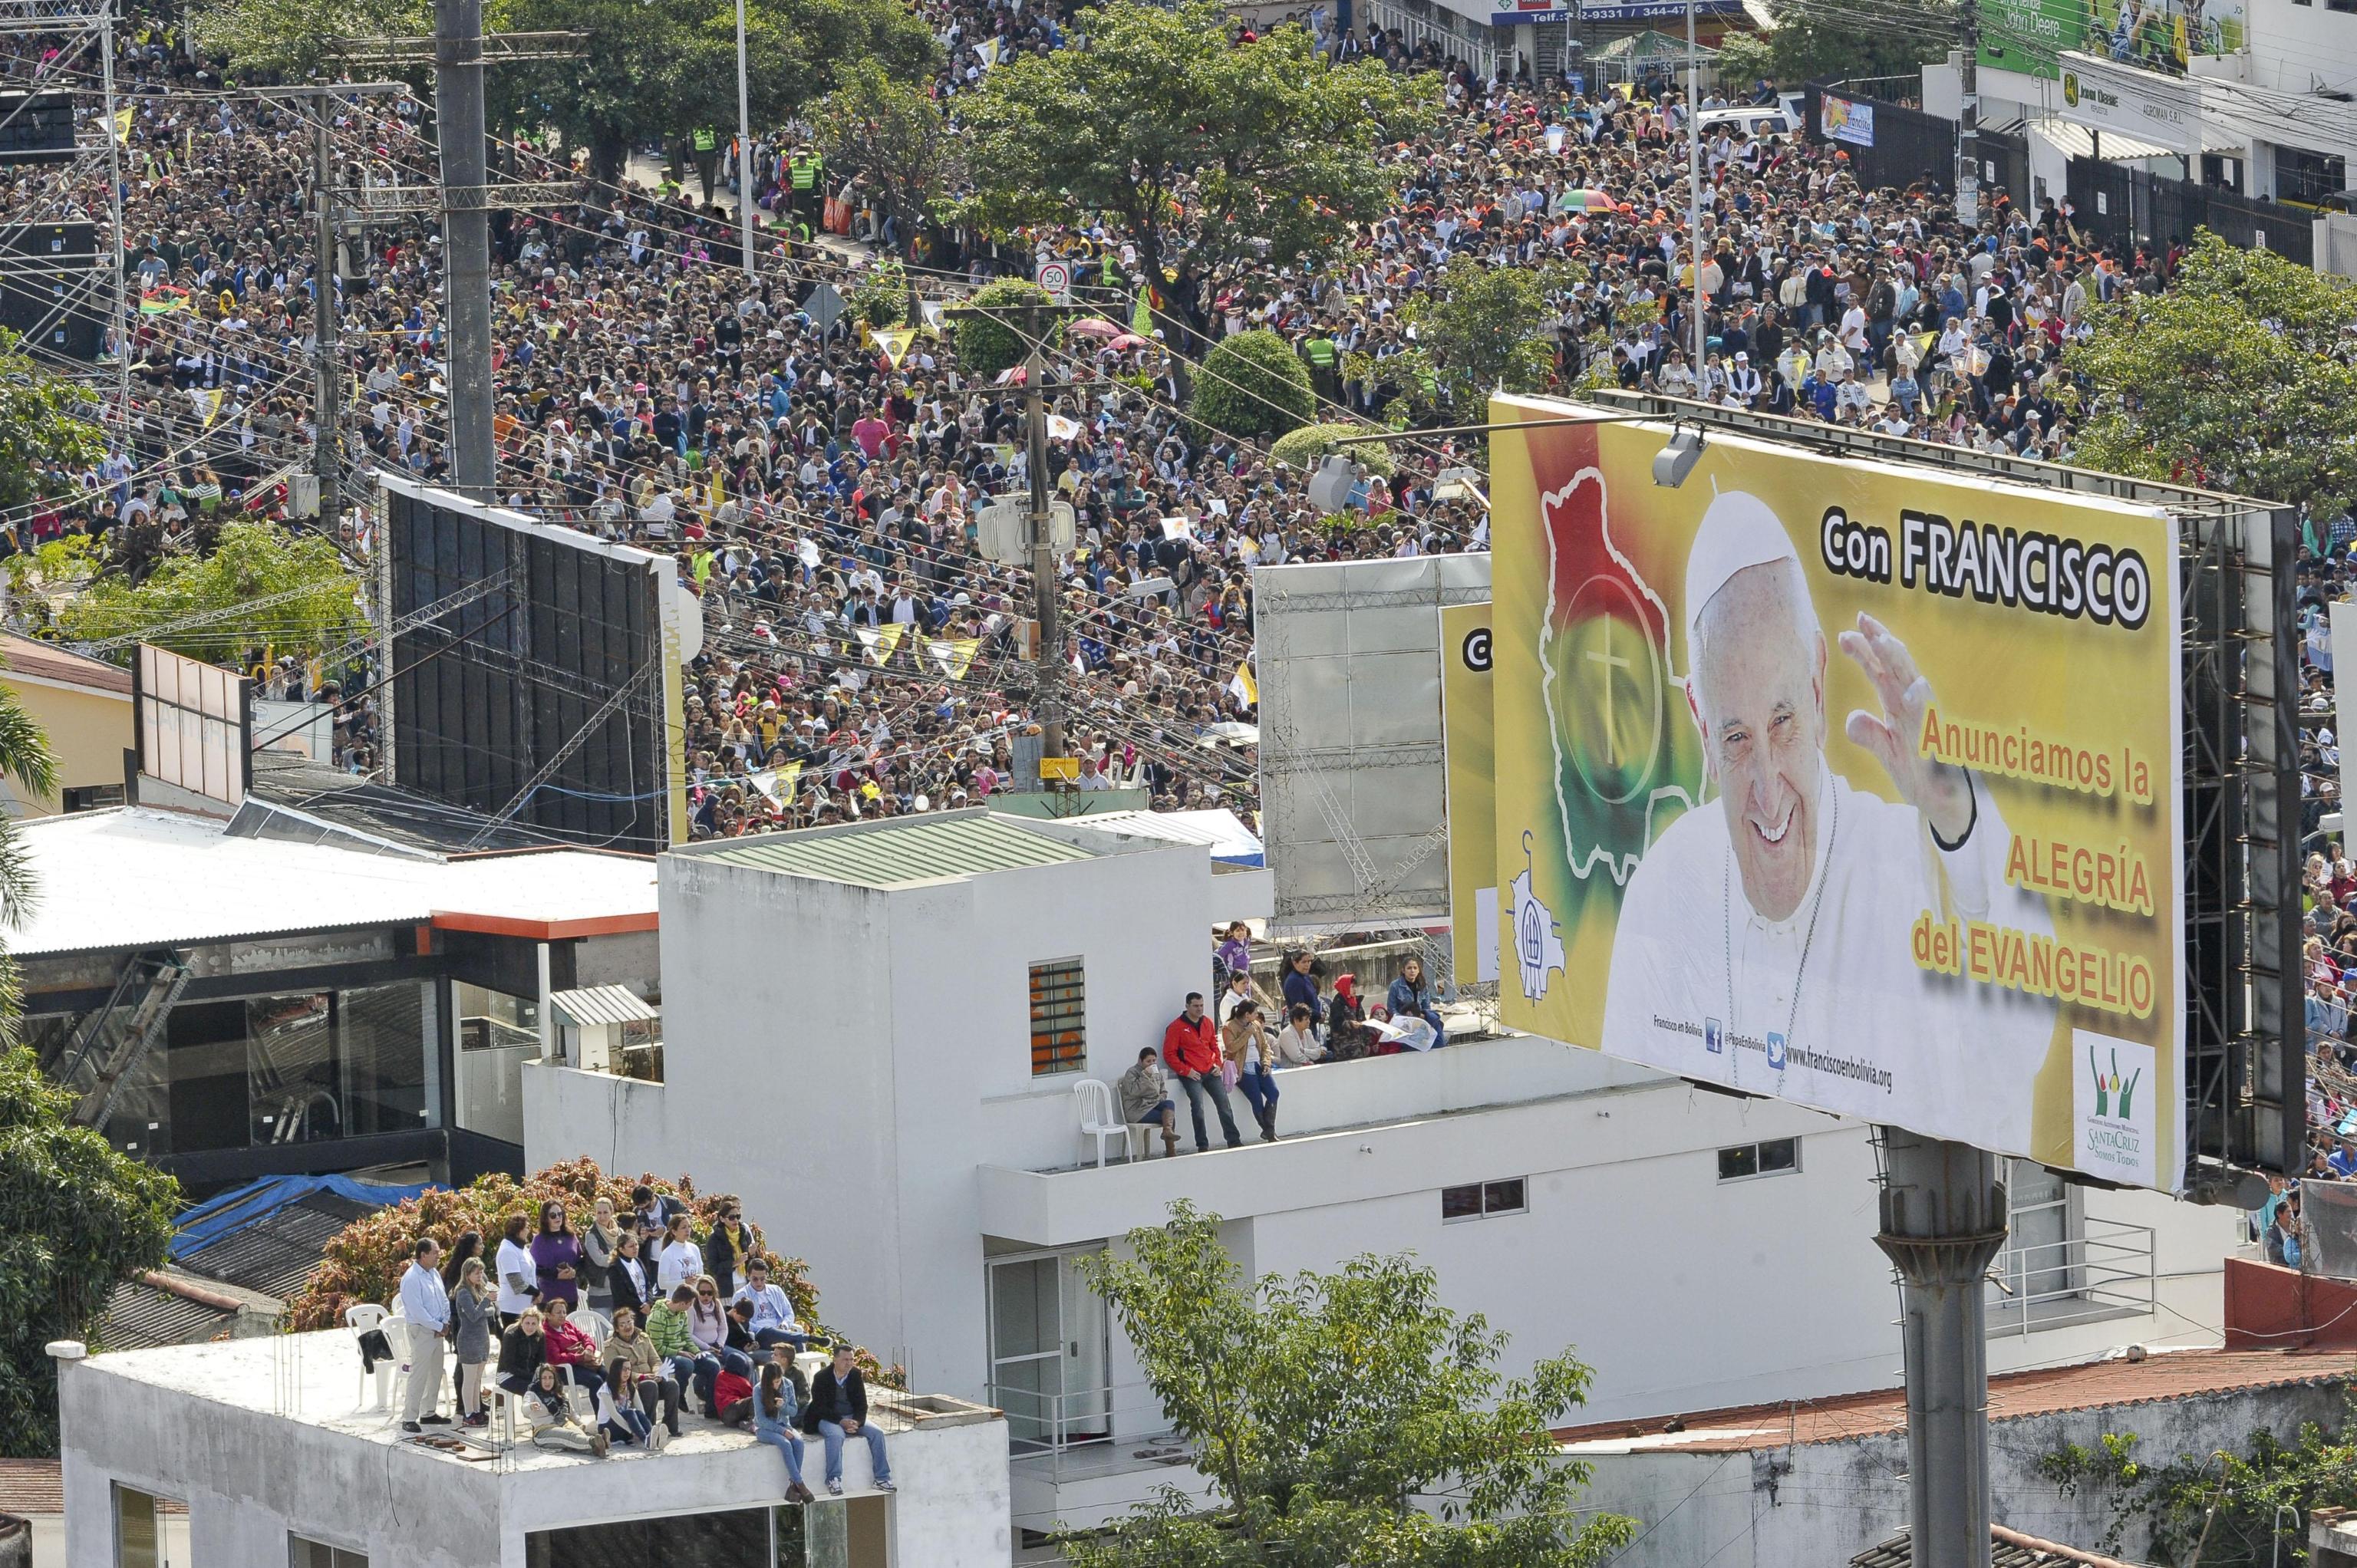 Nearly 2 million people attended Mass in Santa Cruz de la Sierra